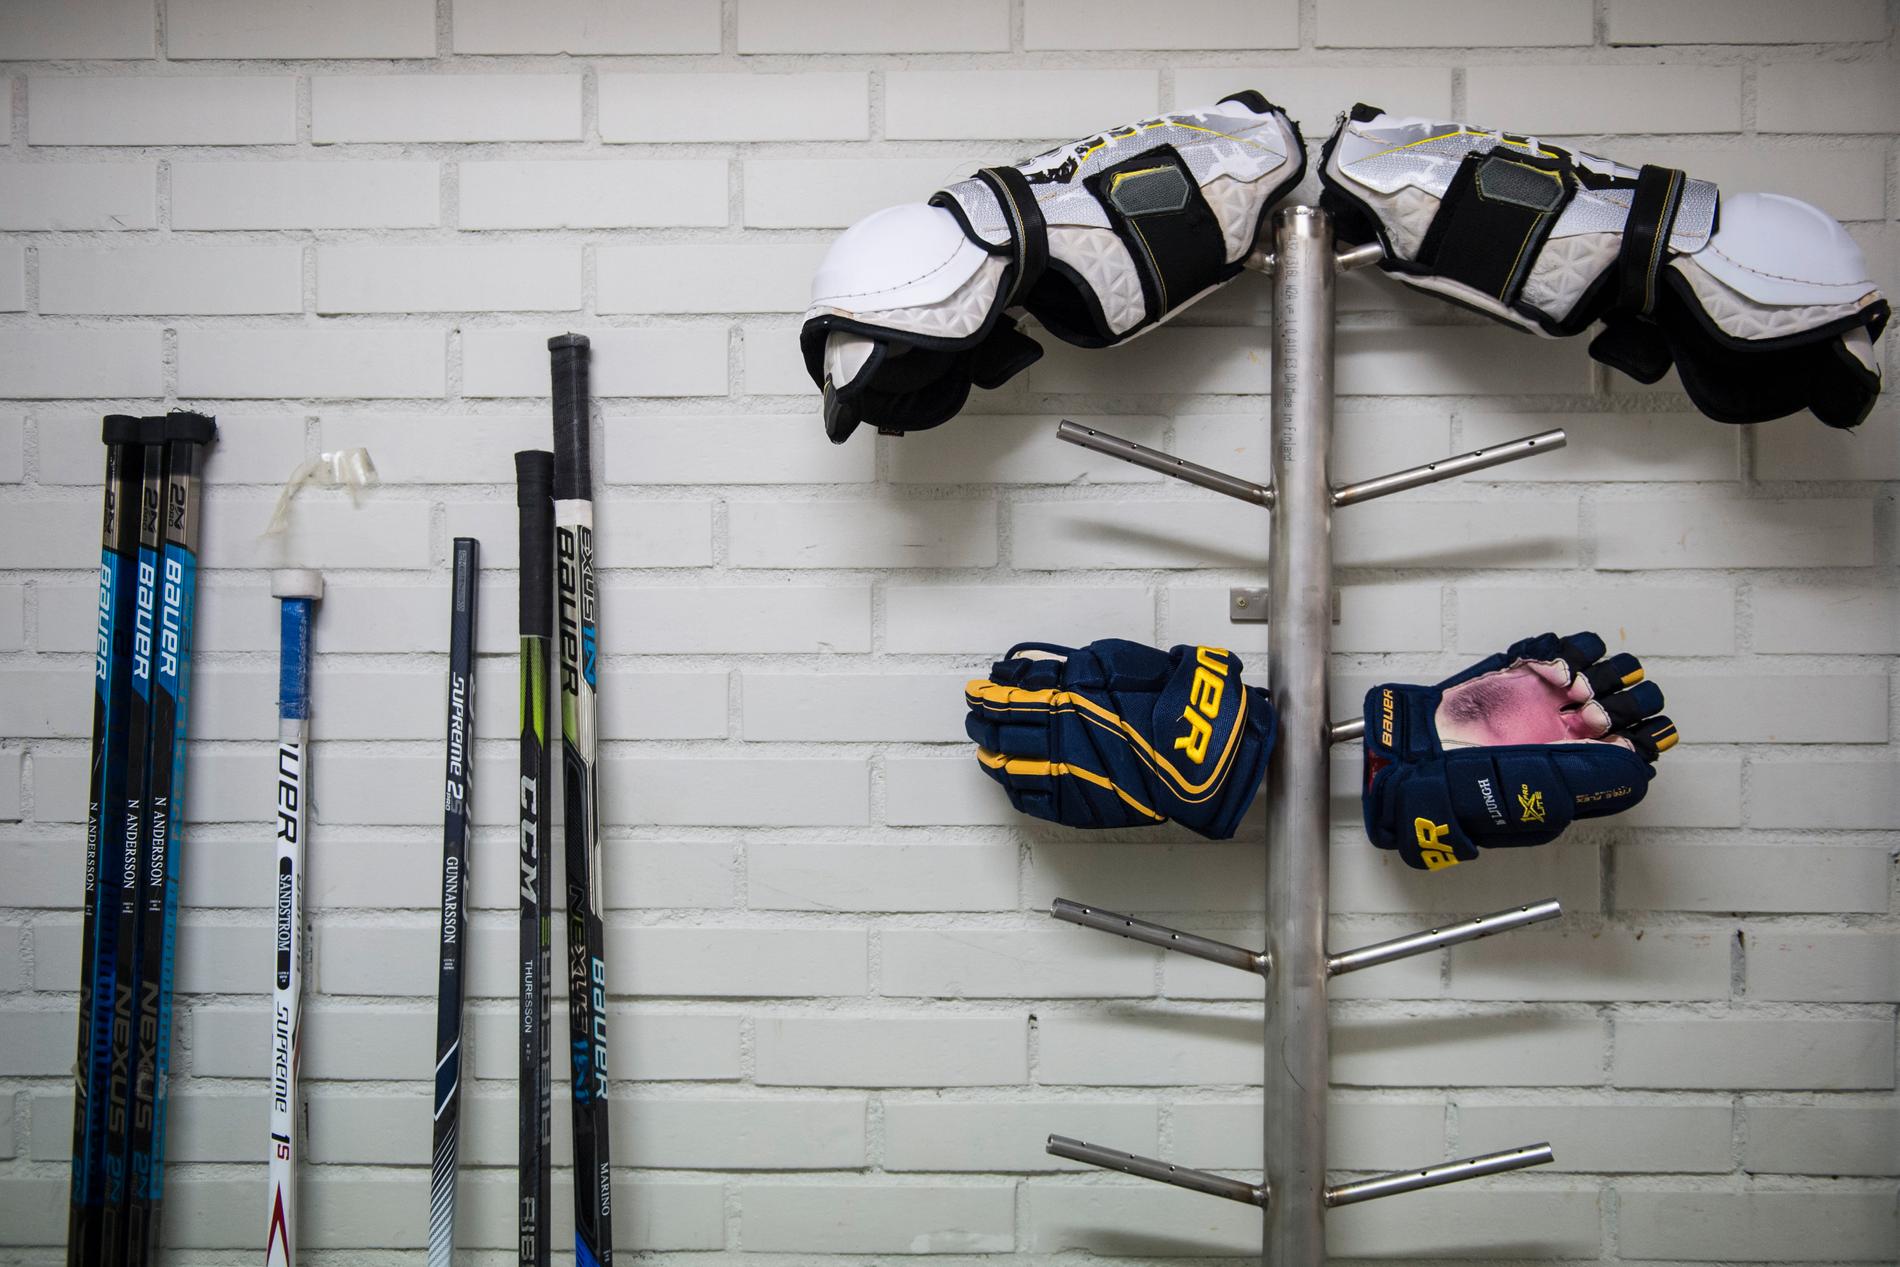 Hockeyutrustning, häst eller tio par skidor. Frågan om idrottsgymnasier och kravet på utrustning kontra lagkrav på avgiftsfri utbildning utreds i höst. Arkivbild.